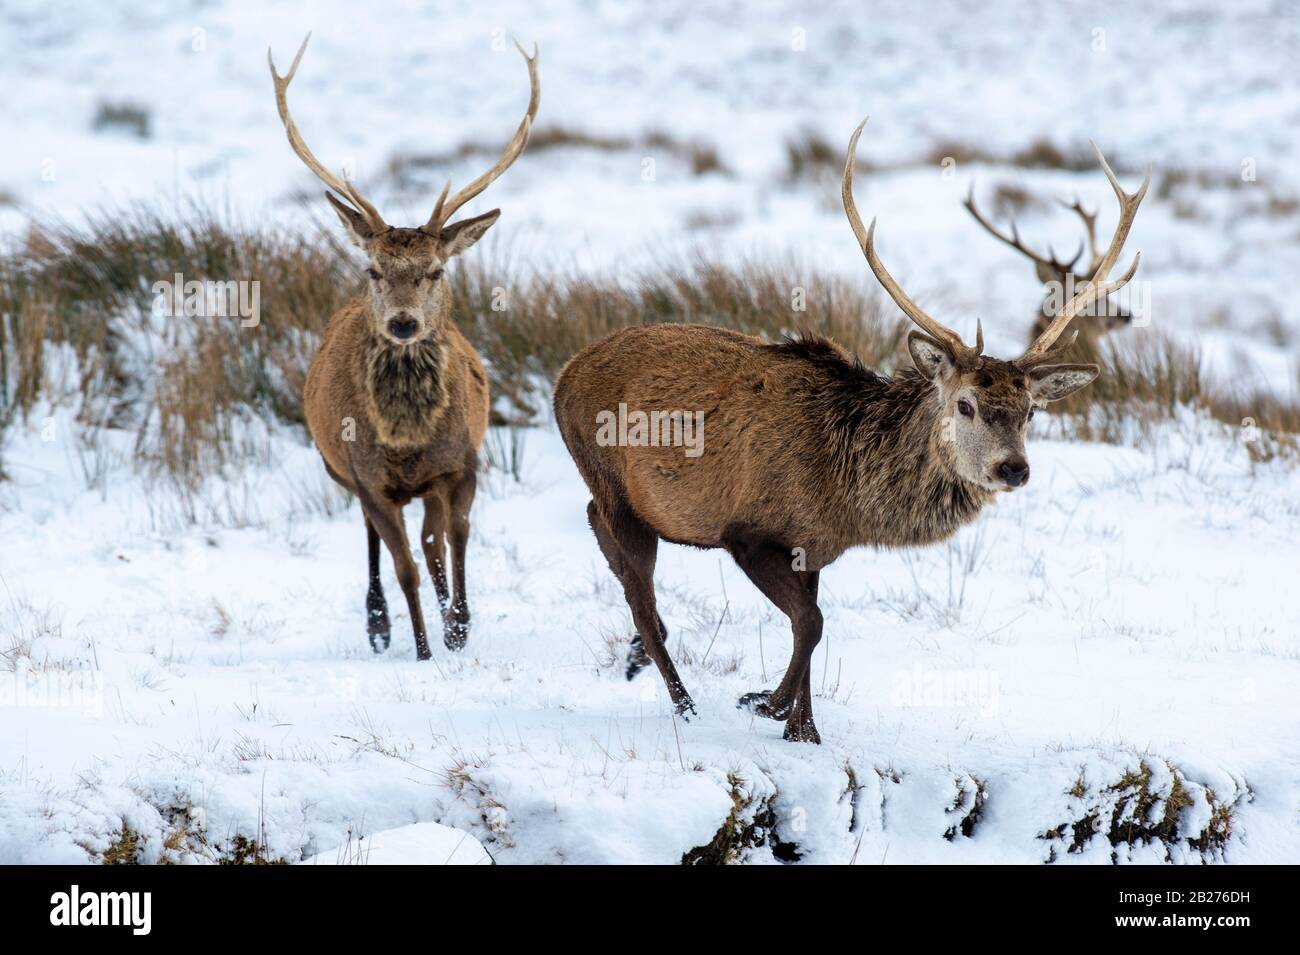 Running deer in snow Stock Photo